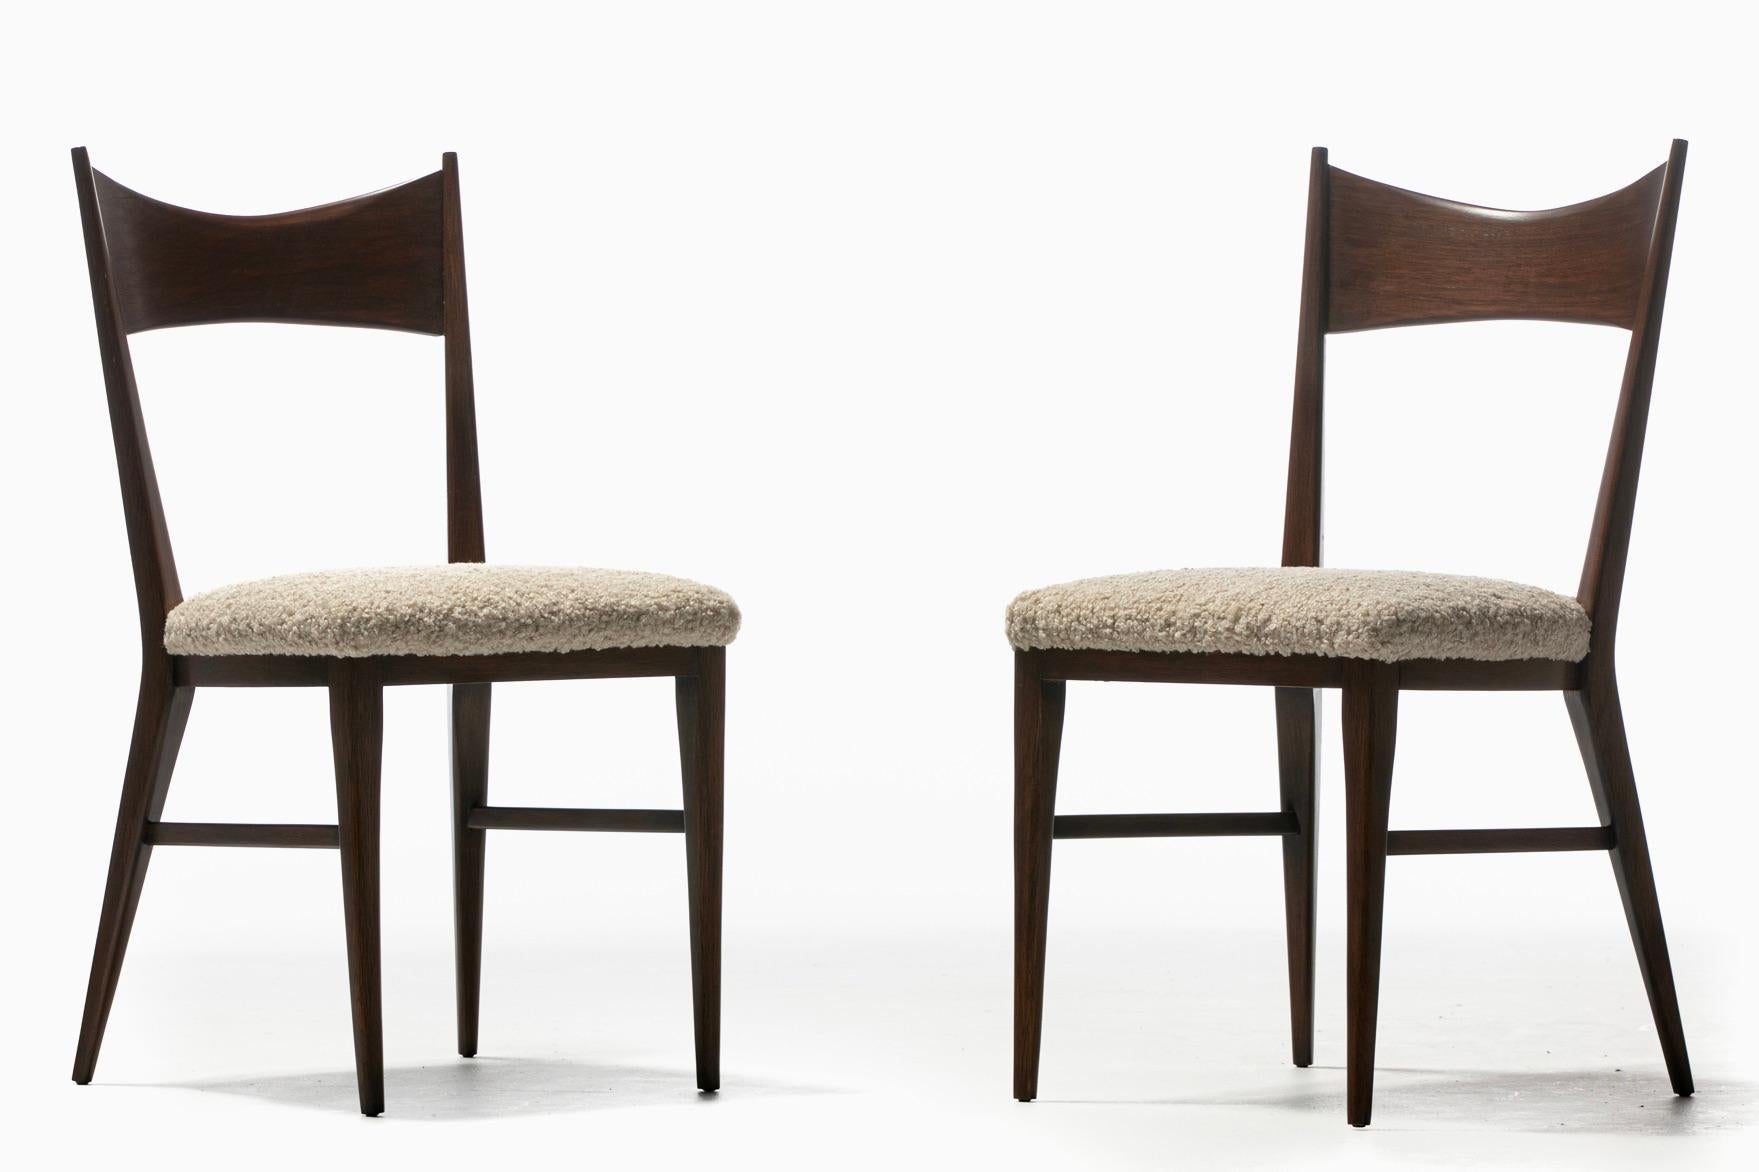 Ein inspirierendes Paar vollständig restaurierter Paul McCobb Beistellstühle aus Nussbaumholz mit neuen Sitzpolstern aus zart strukturiertem elfenbeinweißem Bouclé. Paul McCobb ist bekannt für sein Talent, die besten Möbel der klassischen